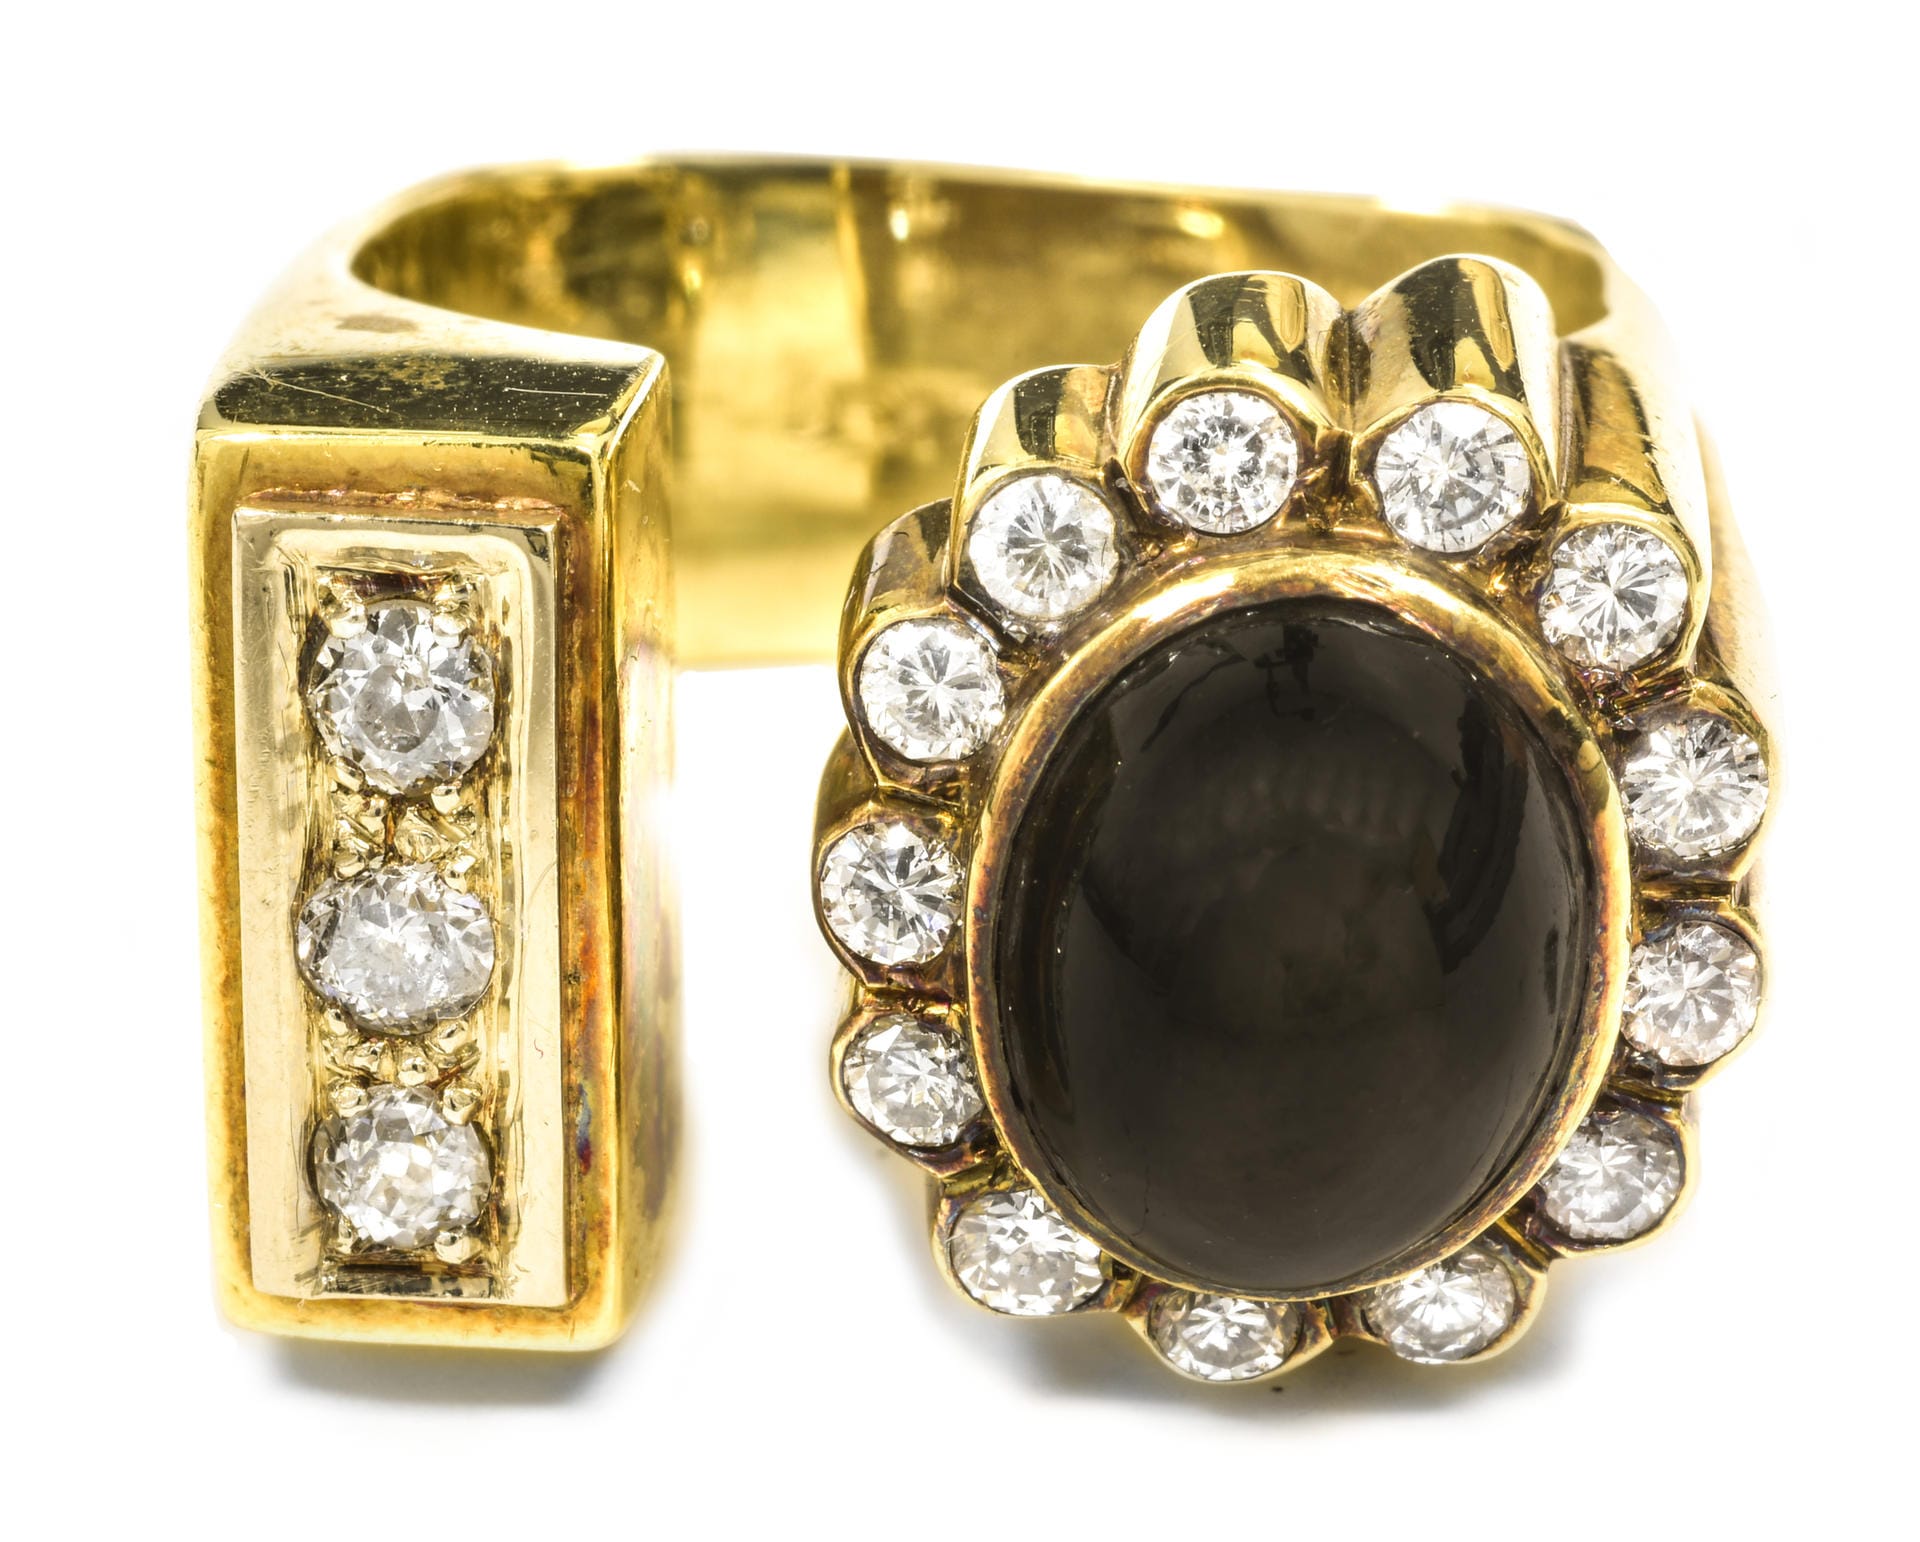 15.000 US-Dollar war einem Sammler dieser Ring aus dem Jahr 1969 wert. Das Juwel aus 14 Karat Gold übertraf damit deutlich die Erwartungen.